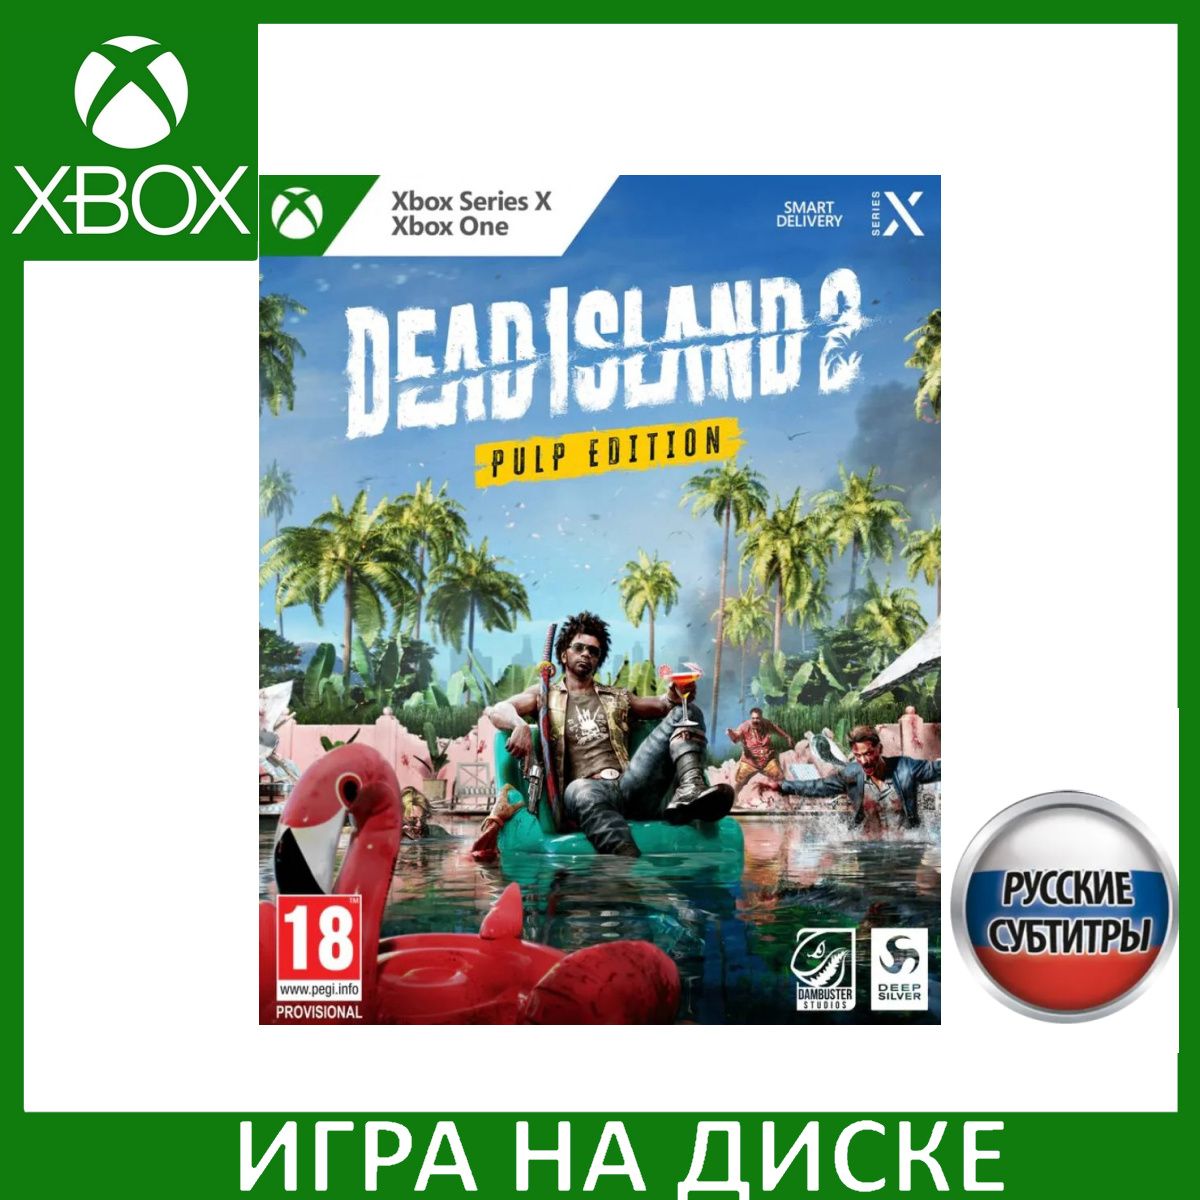 Игра Dead Island 2 Pulp Edition (Xbox Series, Xbox One, Русские субтитры)  купить по низкой цене с доставкой в интернет-магазине OZON (1331079050) | Xbox-One-Spiele